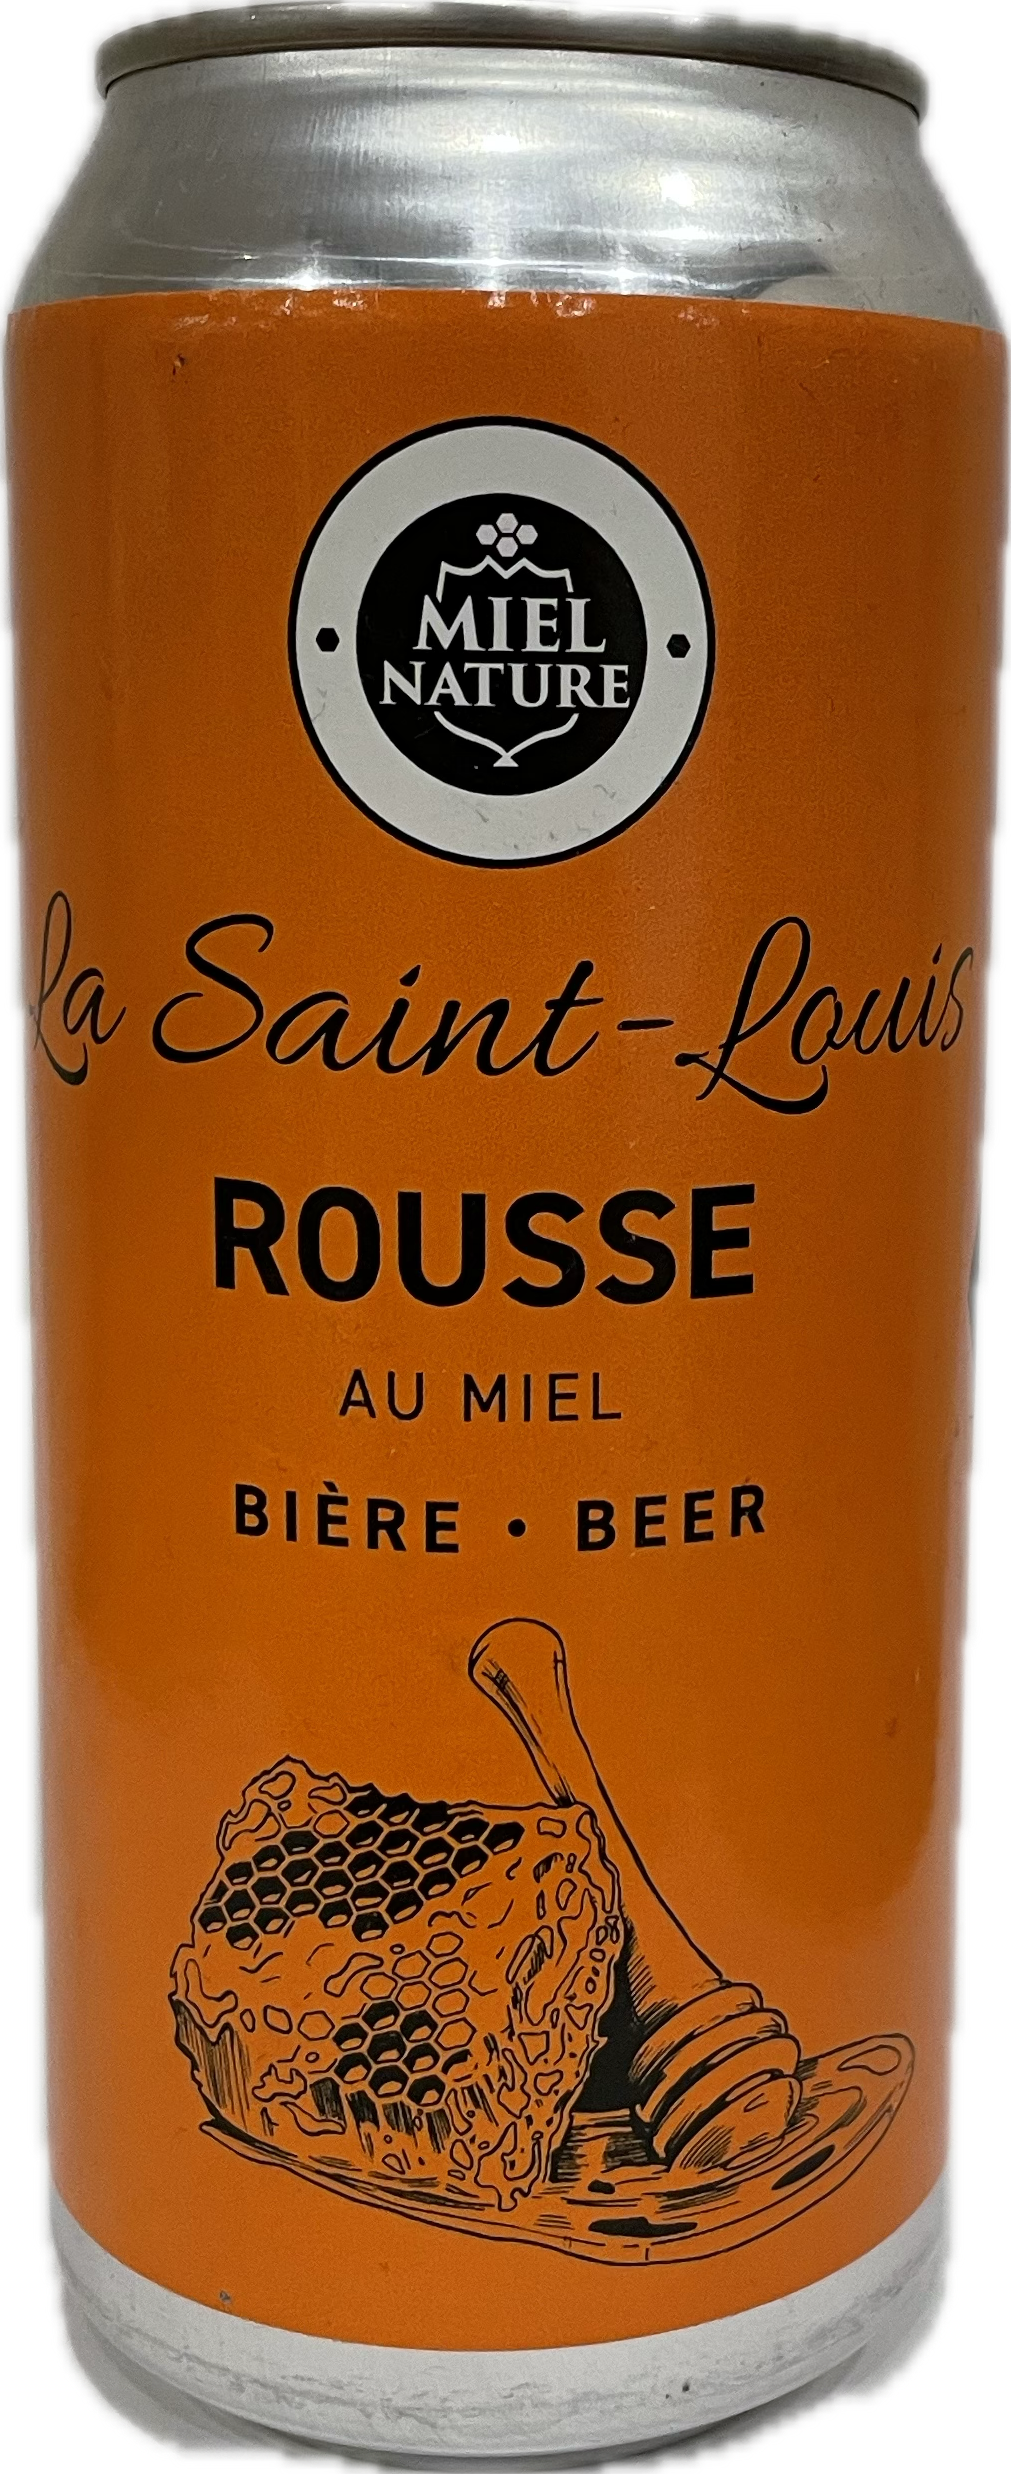 La Saint-Louis Rousse au miel